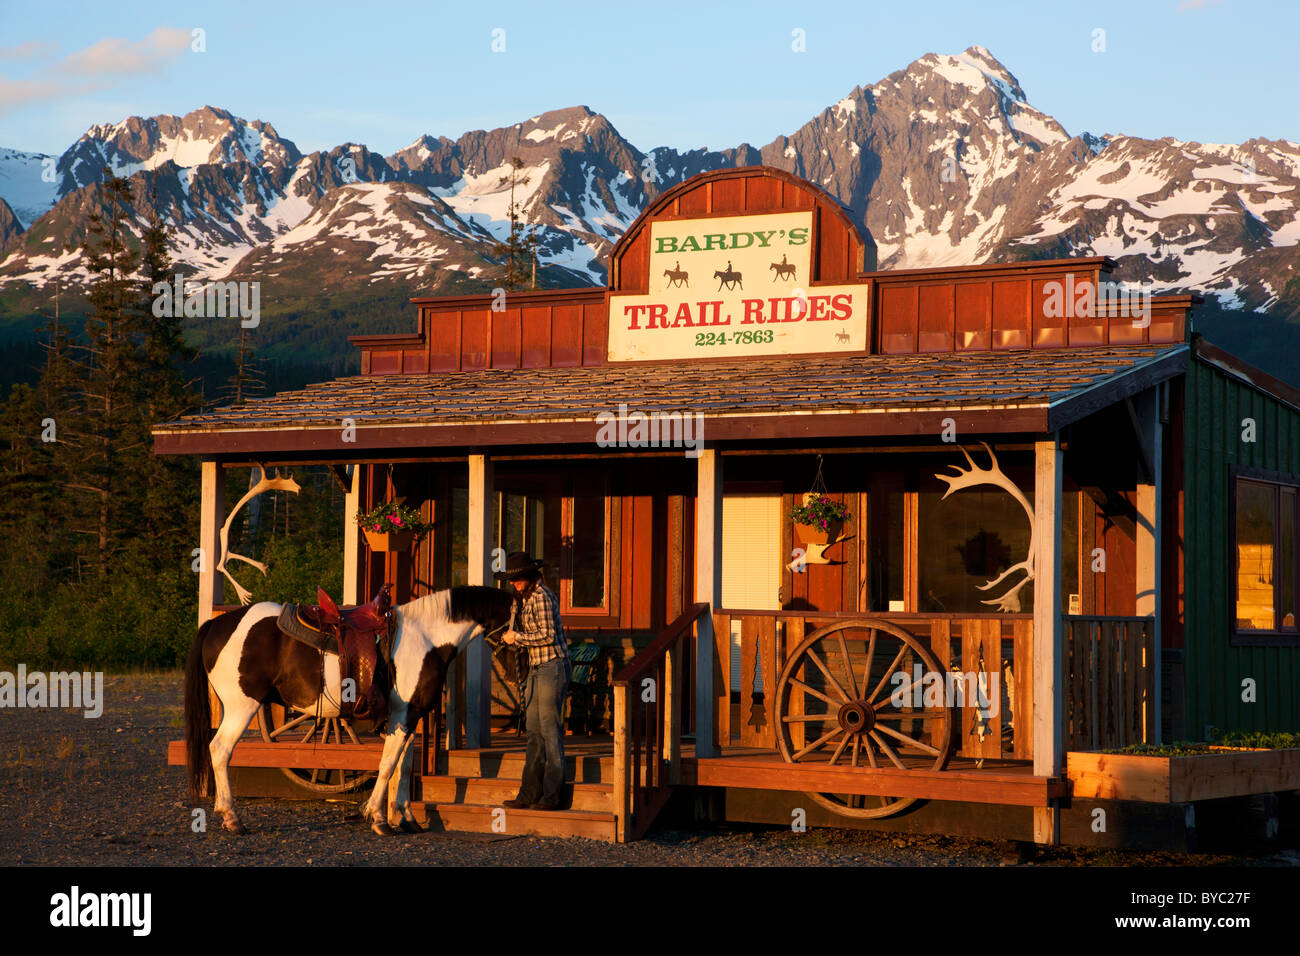 L'équitation près de résurrection Bay, Seward, Alaska. Banque D'Images